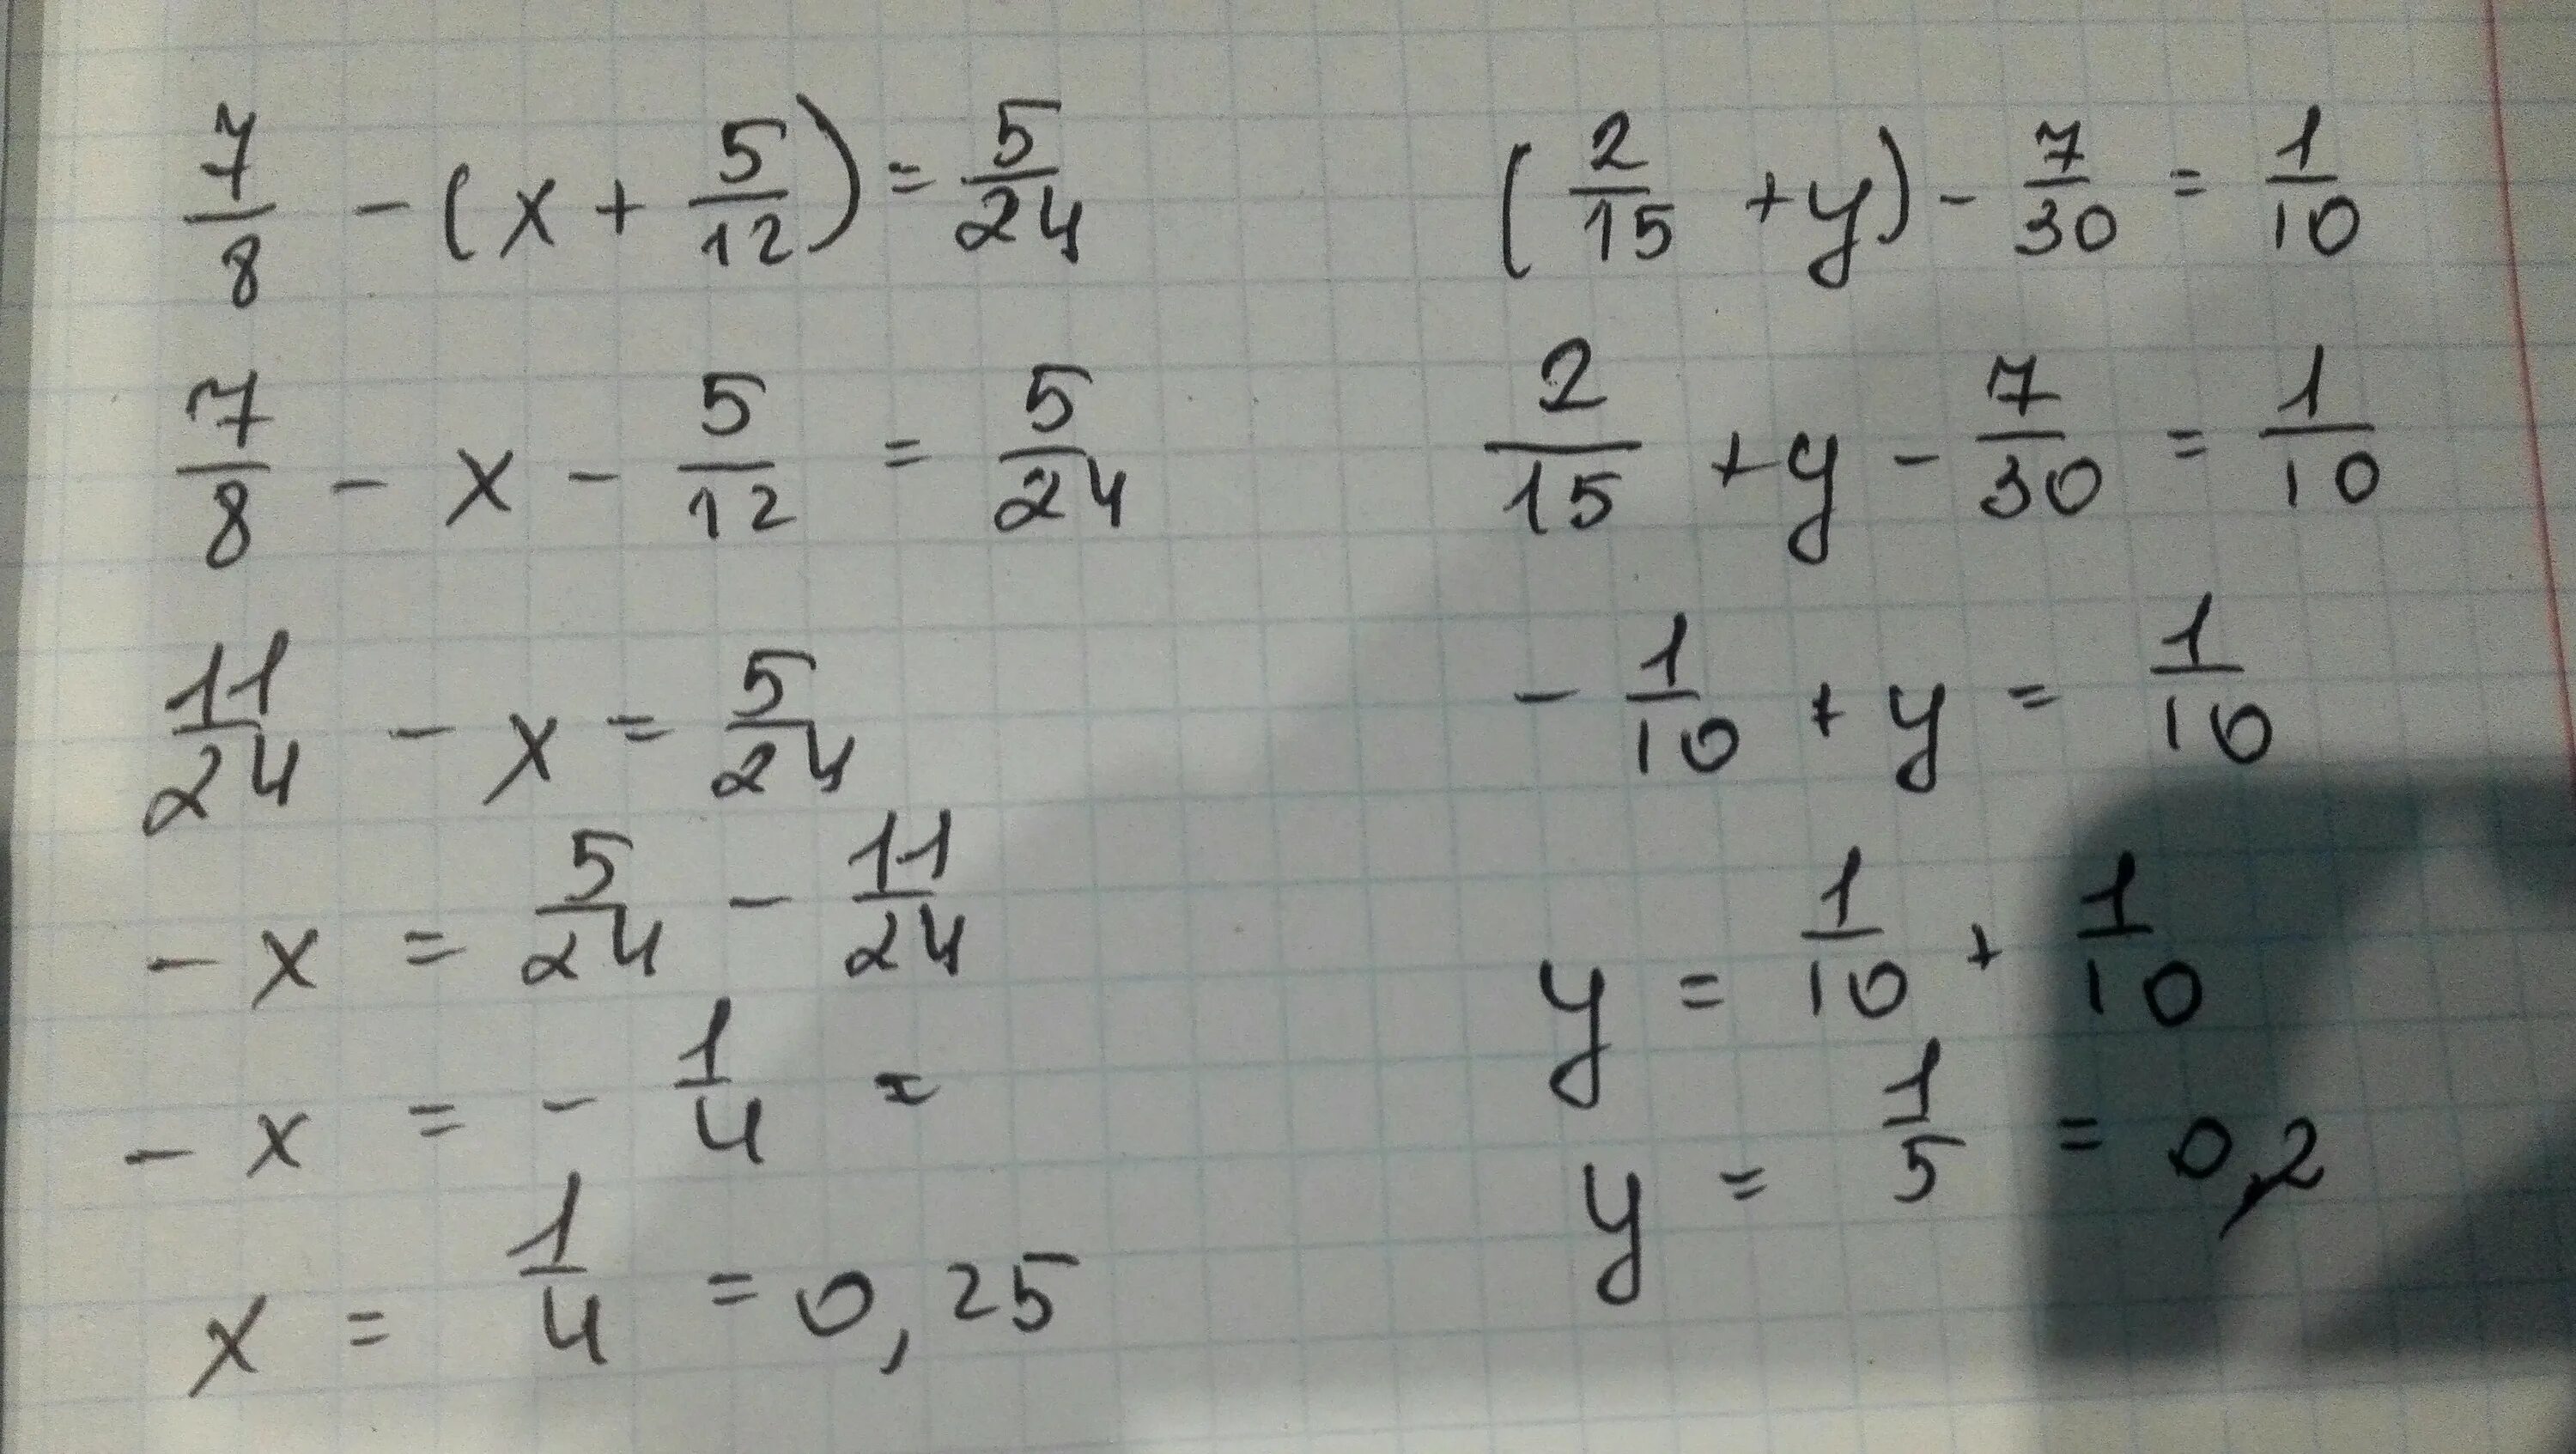 1 9 15 решение. ( 2/15+1 7/12) ×30/103-2 2 1/4 ×9/32+2 1/3 решение. (2/15+1 7/12)*30/103-2:2 1/4*9/32+2 1/3. ( 15 2 + 1 12 7 ) ⋅ 103 30 − 2 : 2 4 1 ⋅ 32 9 + 2 4 3. 10) -30-(12-2x)=8-2x.